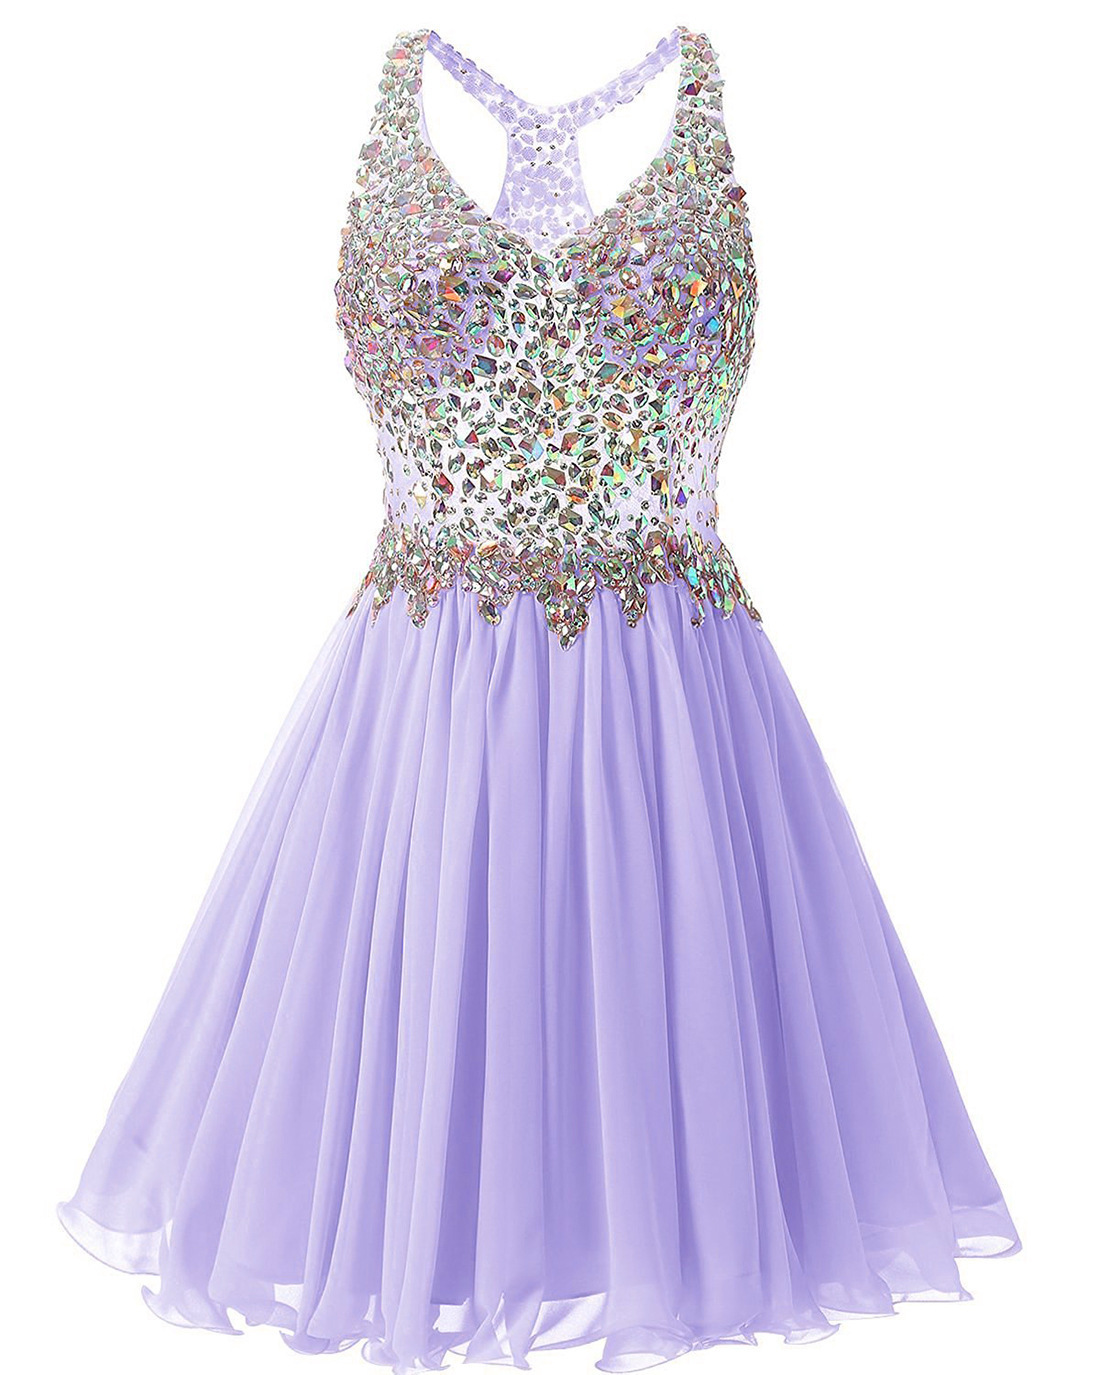 lavender graduation dress